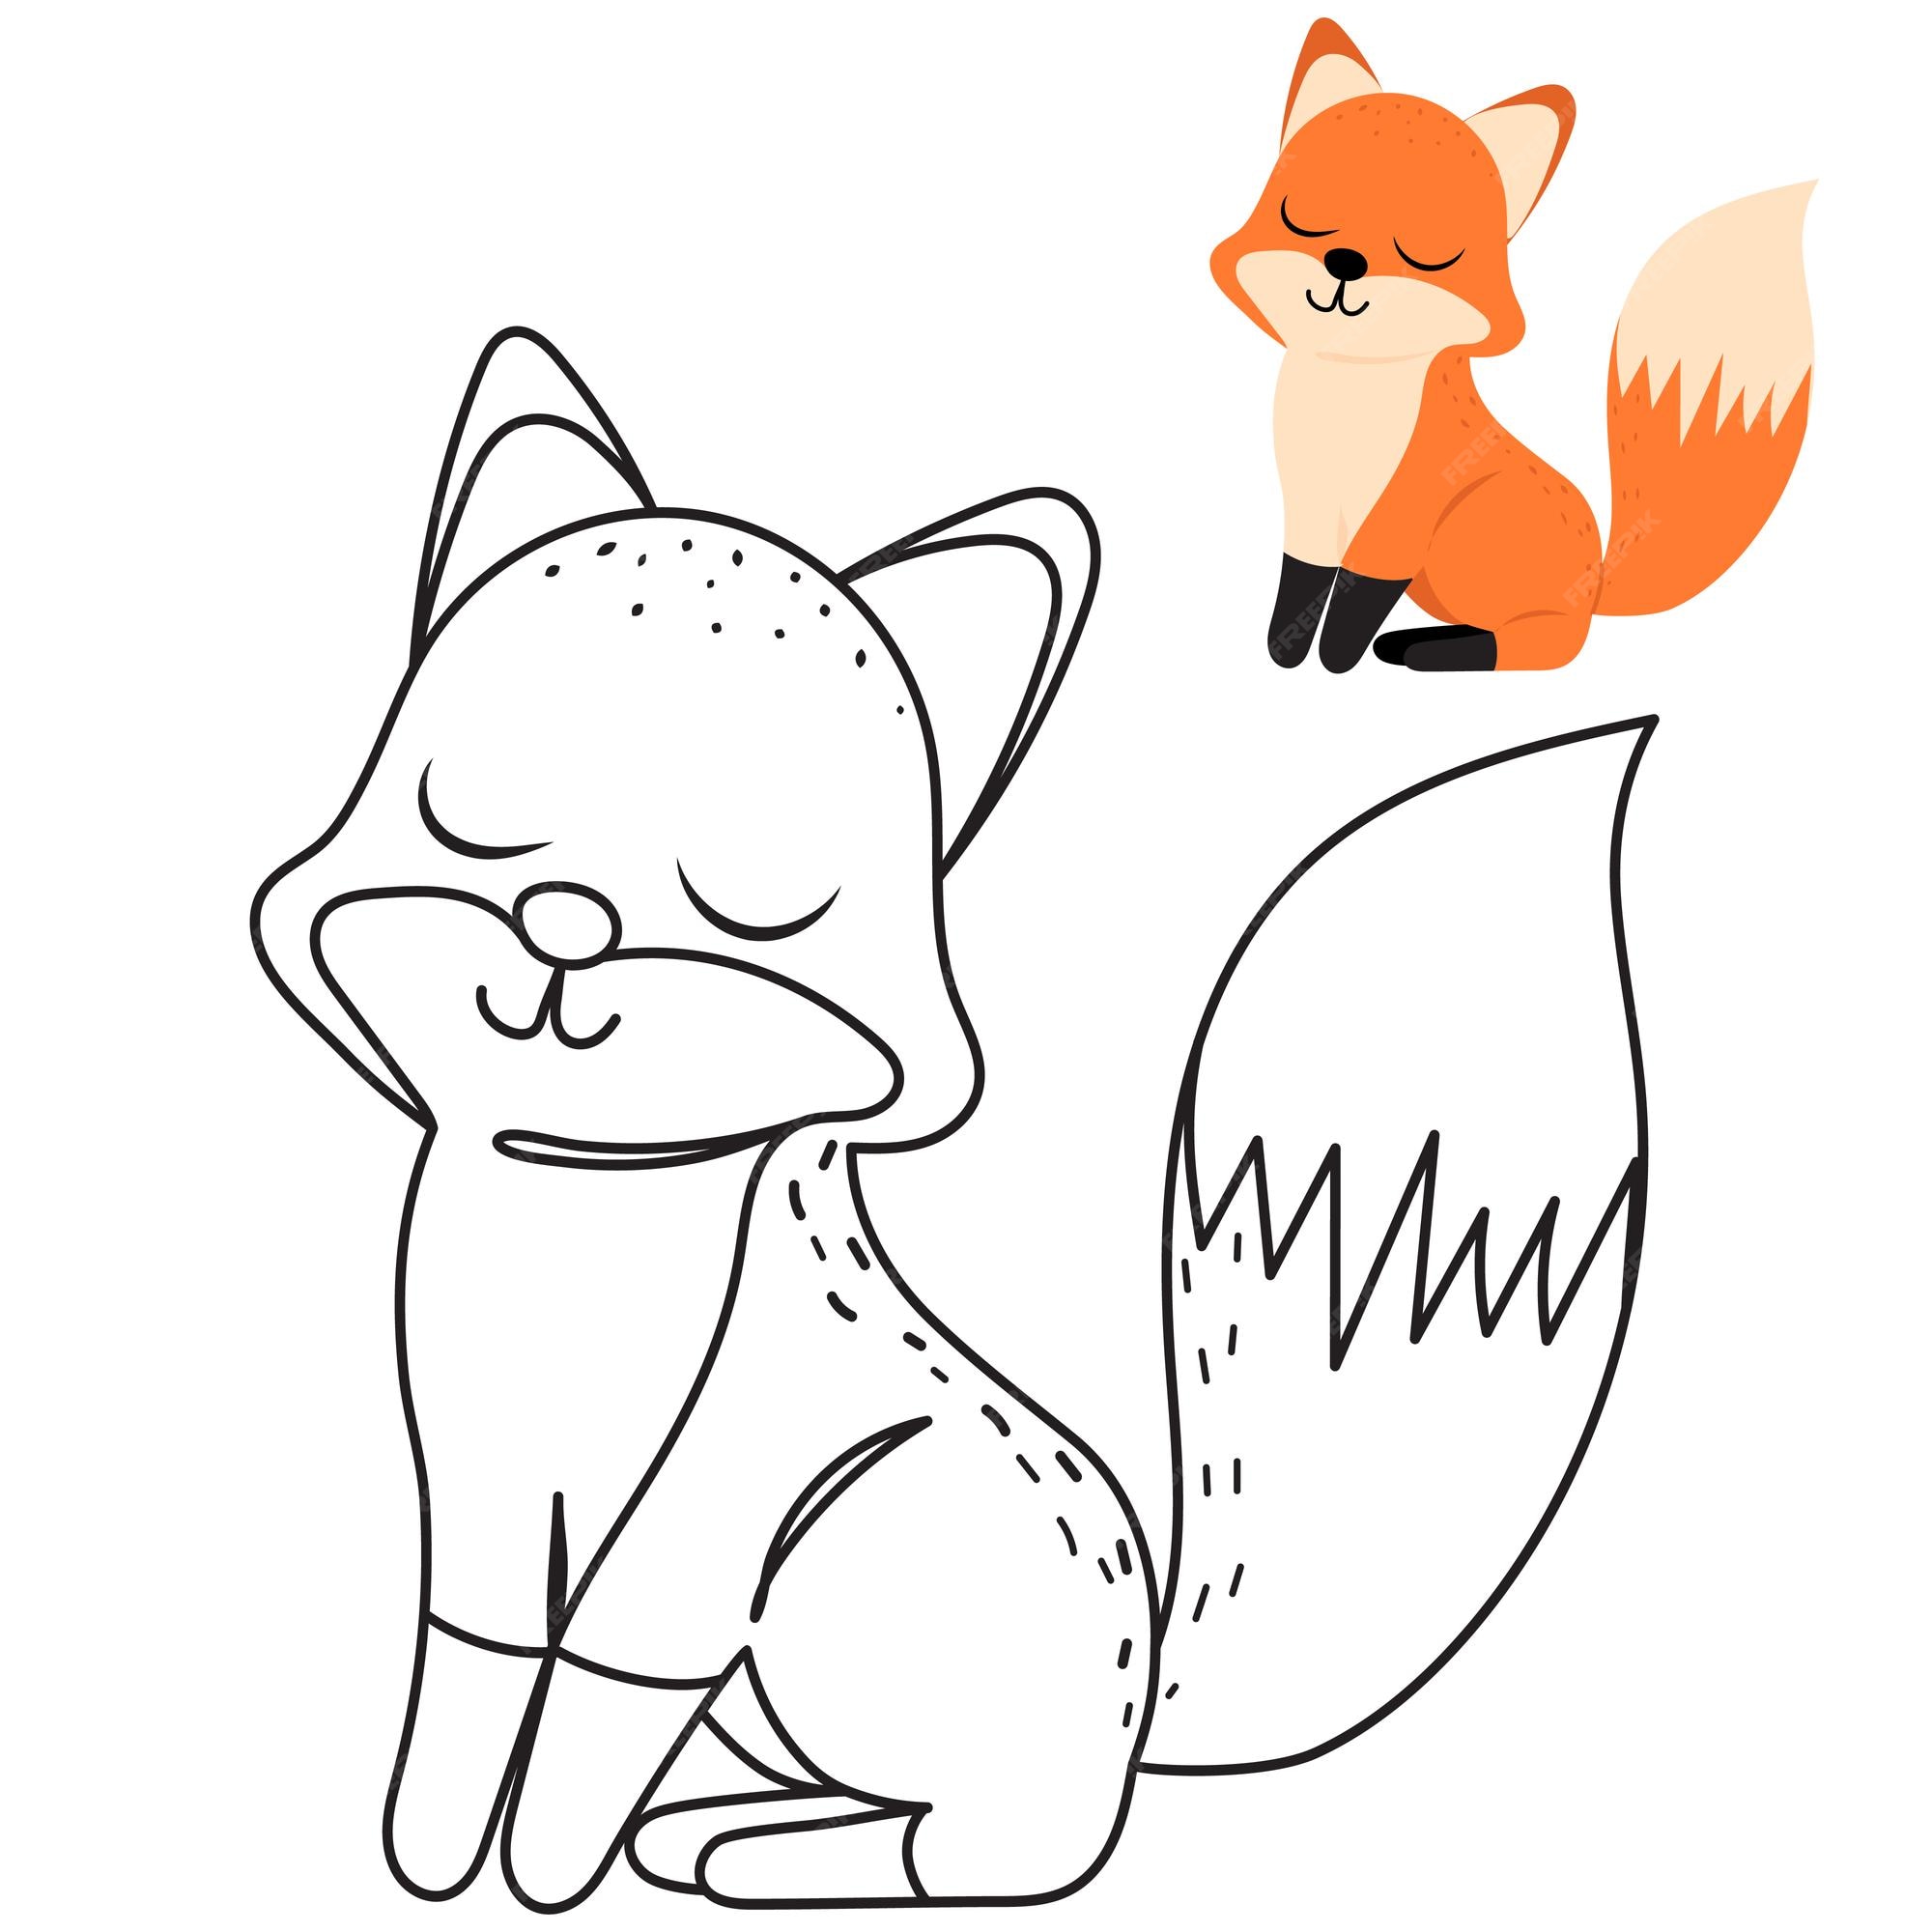 desenho de raposa para colorir 23632859 Vetor no Vecteezy